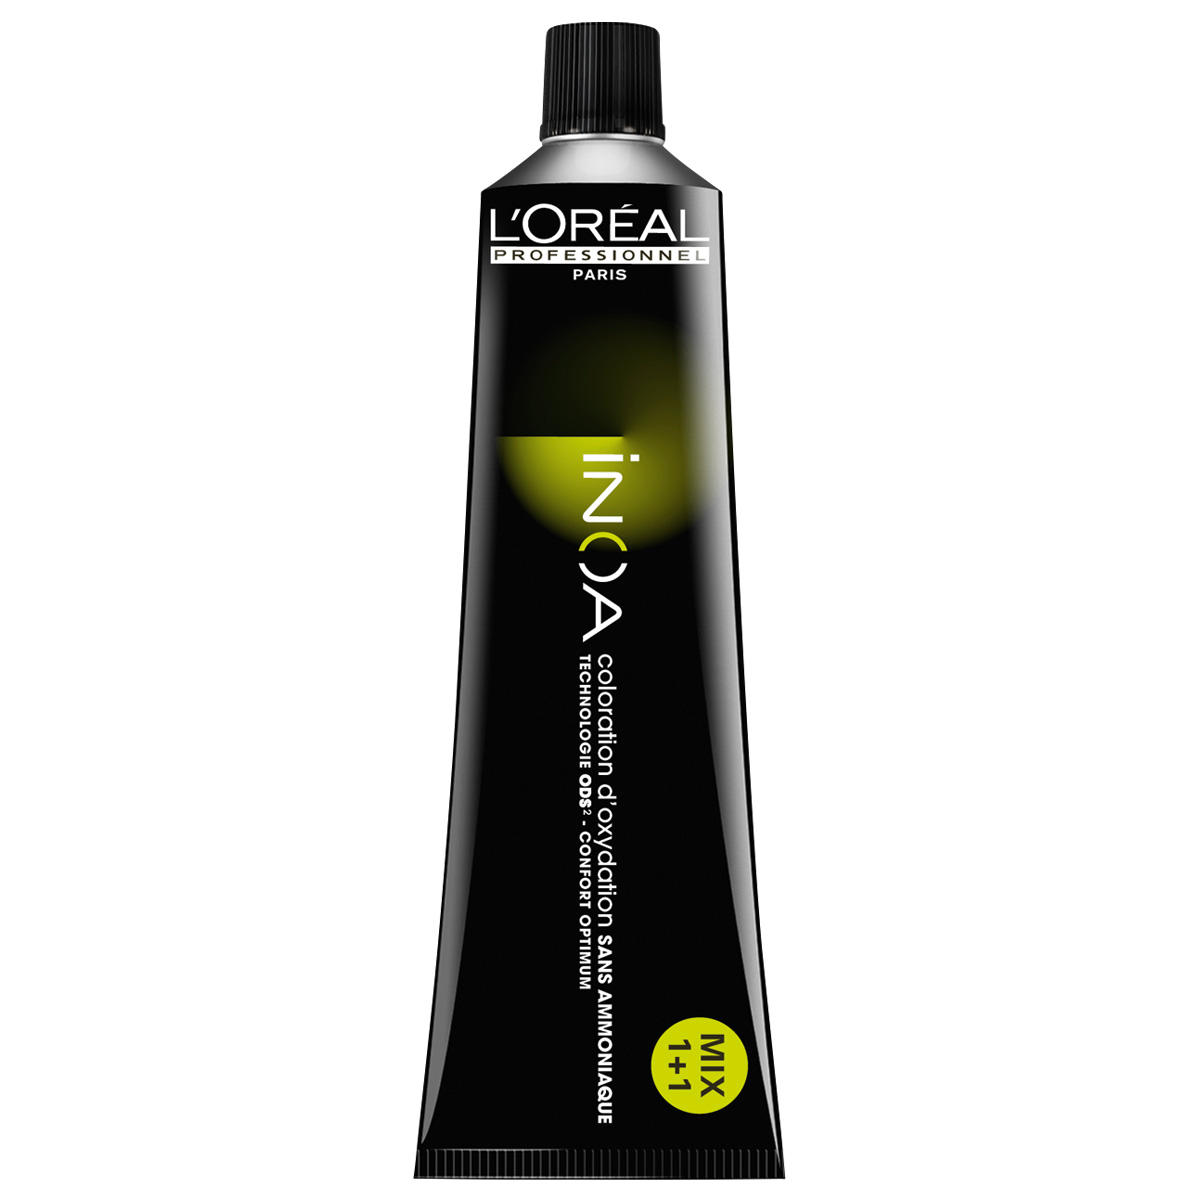 L'Oréal Professionnel Paris Coloration 7.35 Medium Blond Goud Mahonie, Tube 60 ml - 1